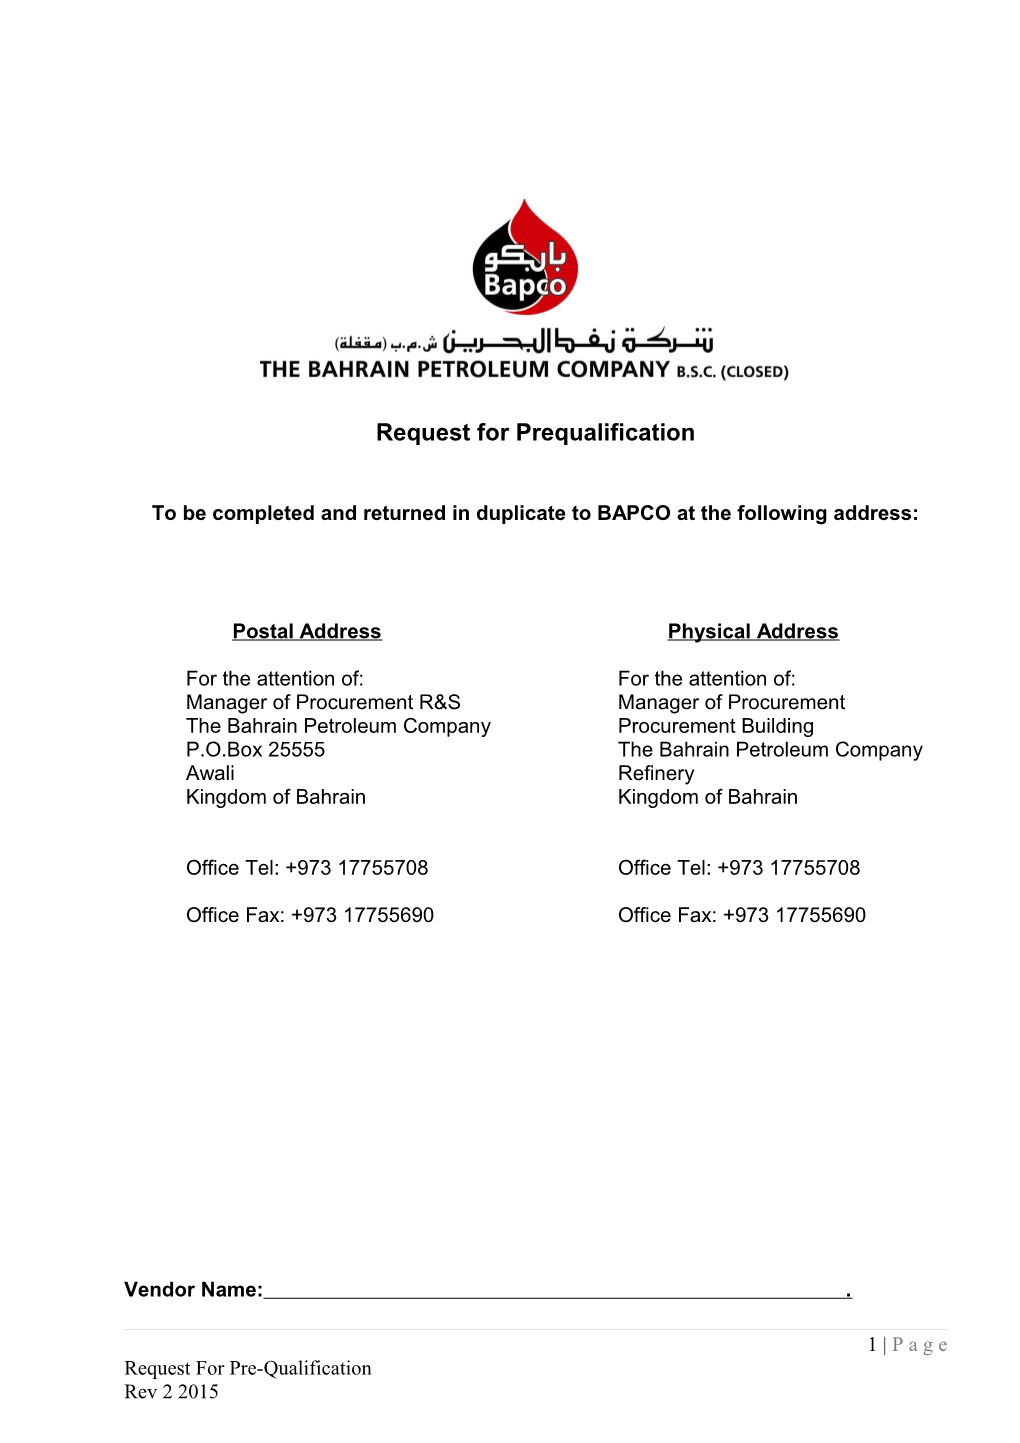 Procedure 4.1 - Prequalification of Suppliers/Contractors (01)